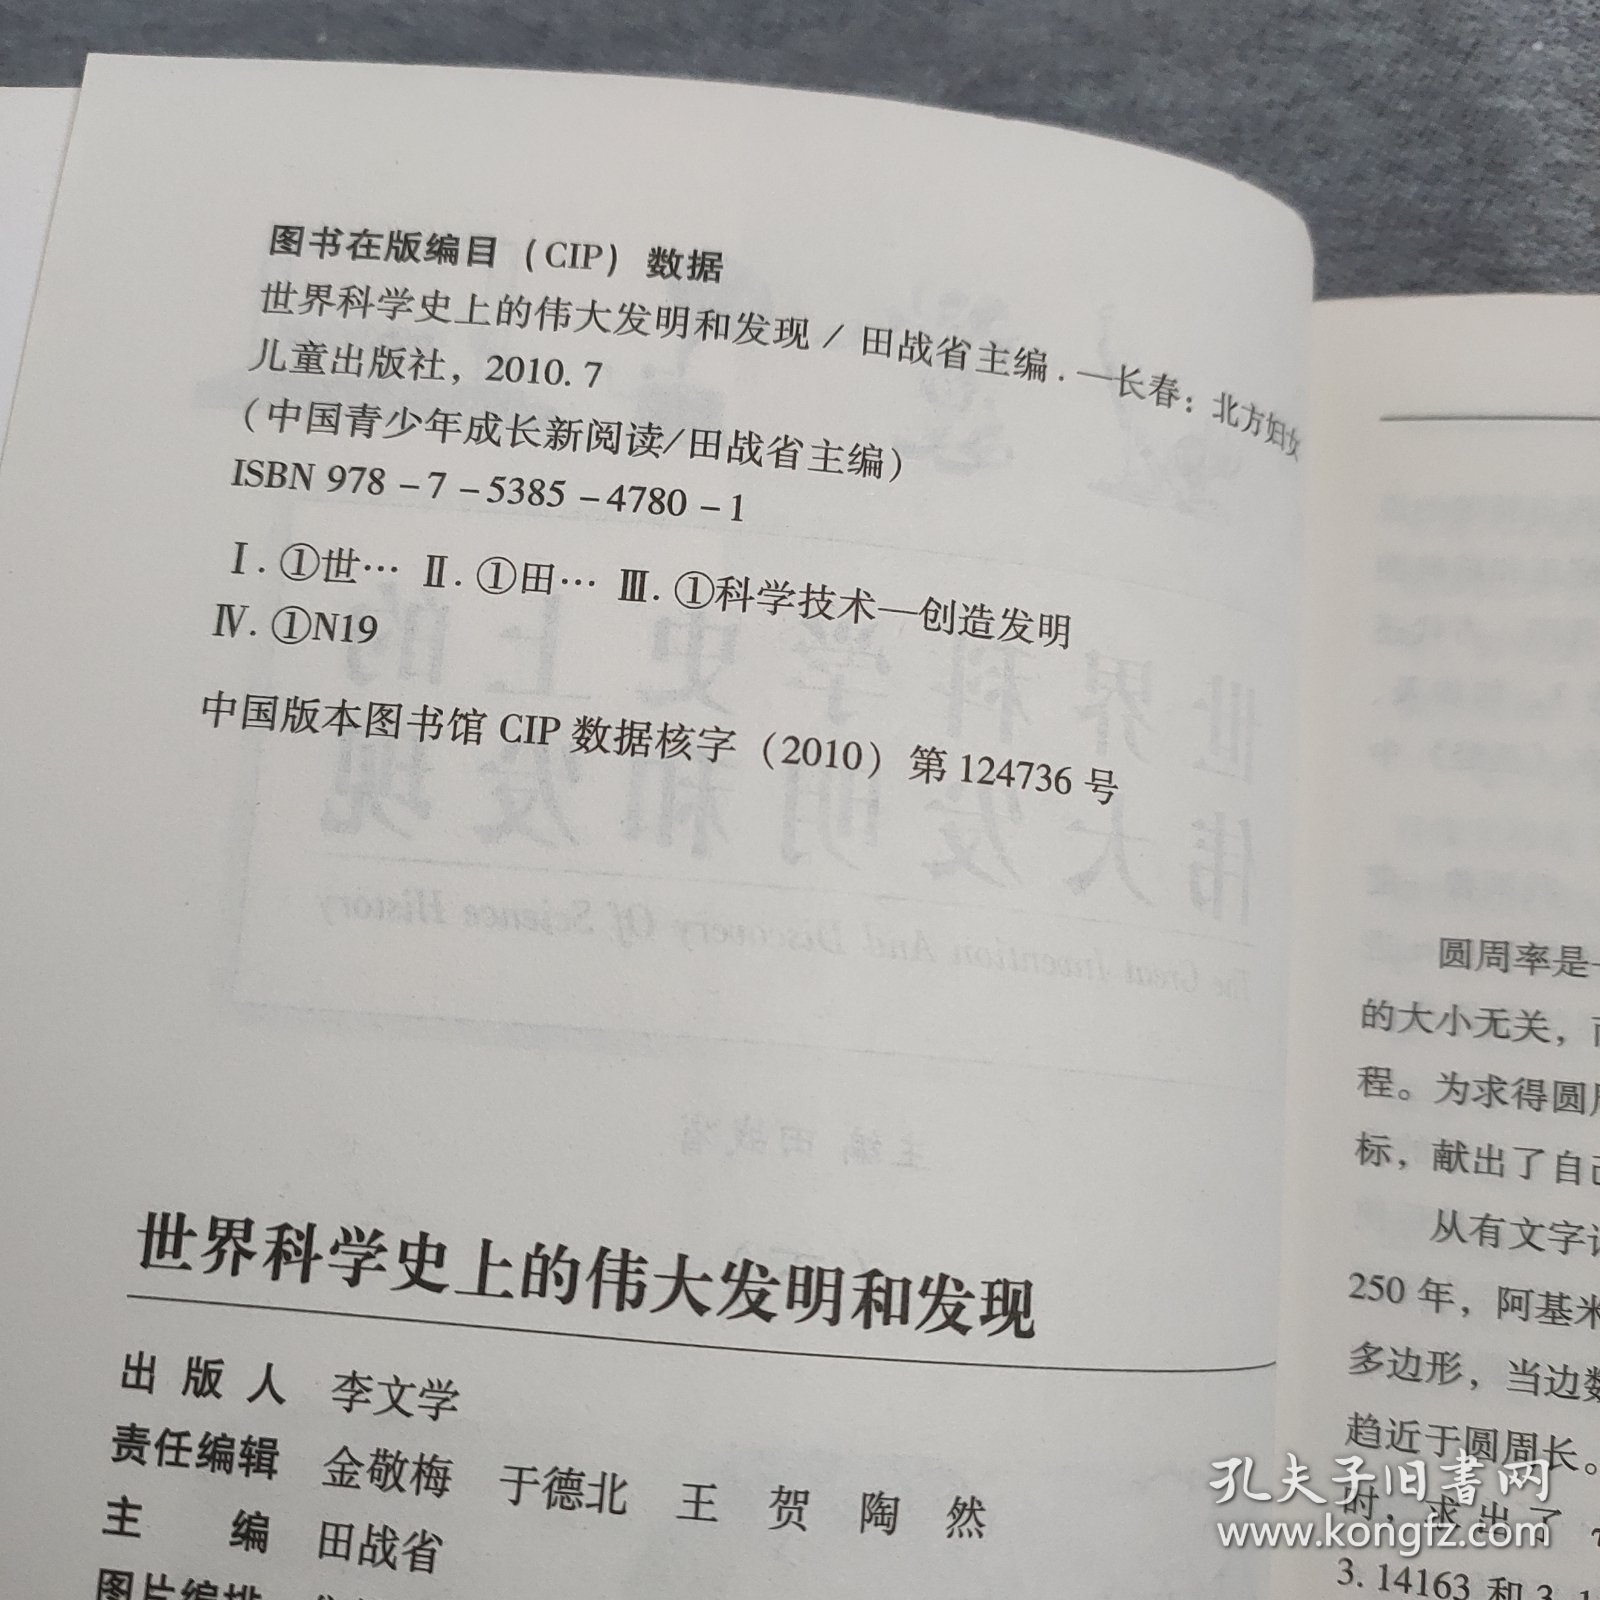 世界科学史上的伟大发明和发现——中国青少年典藏读本